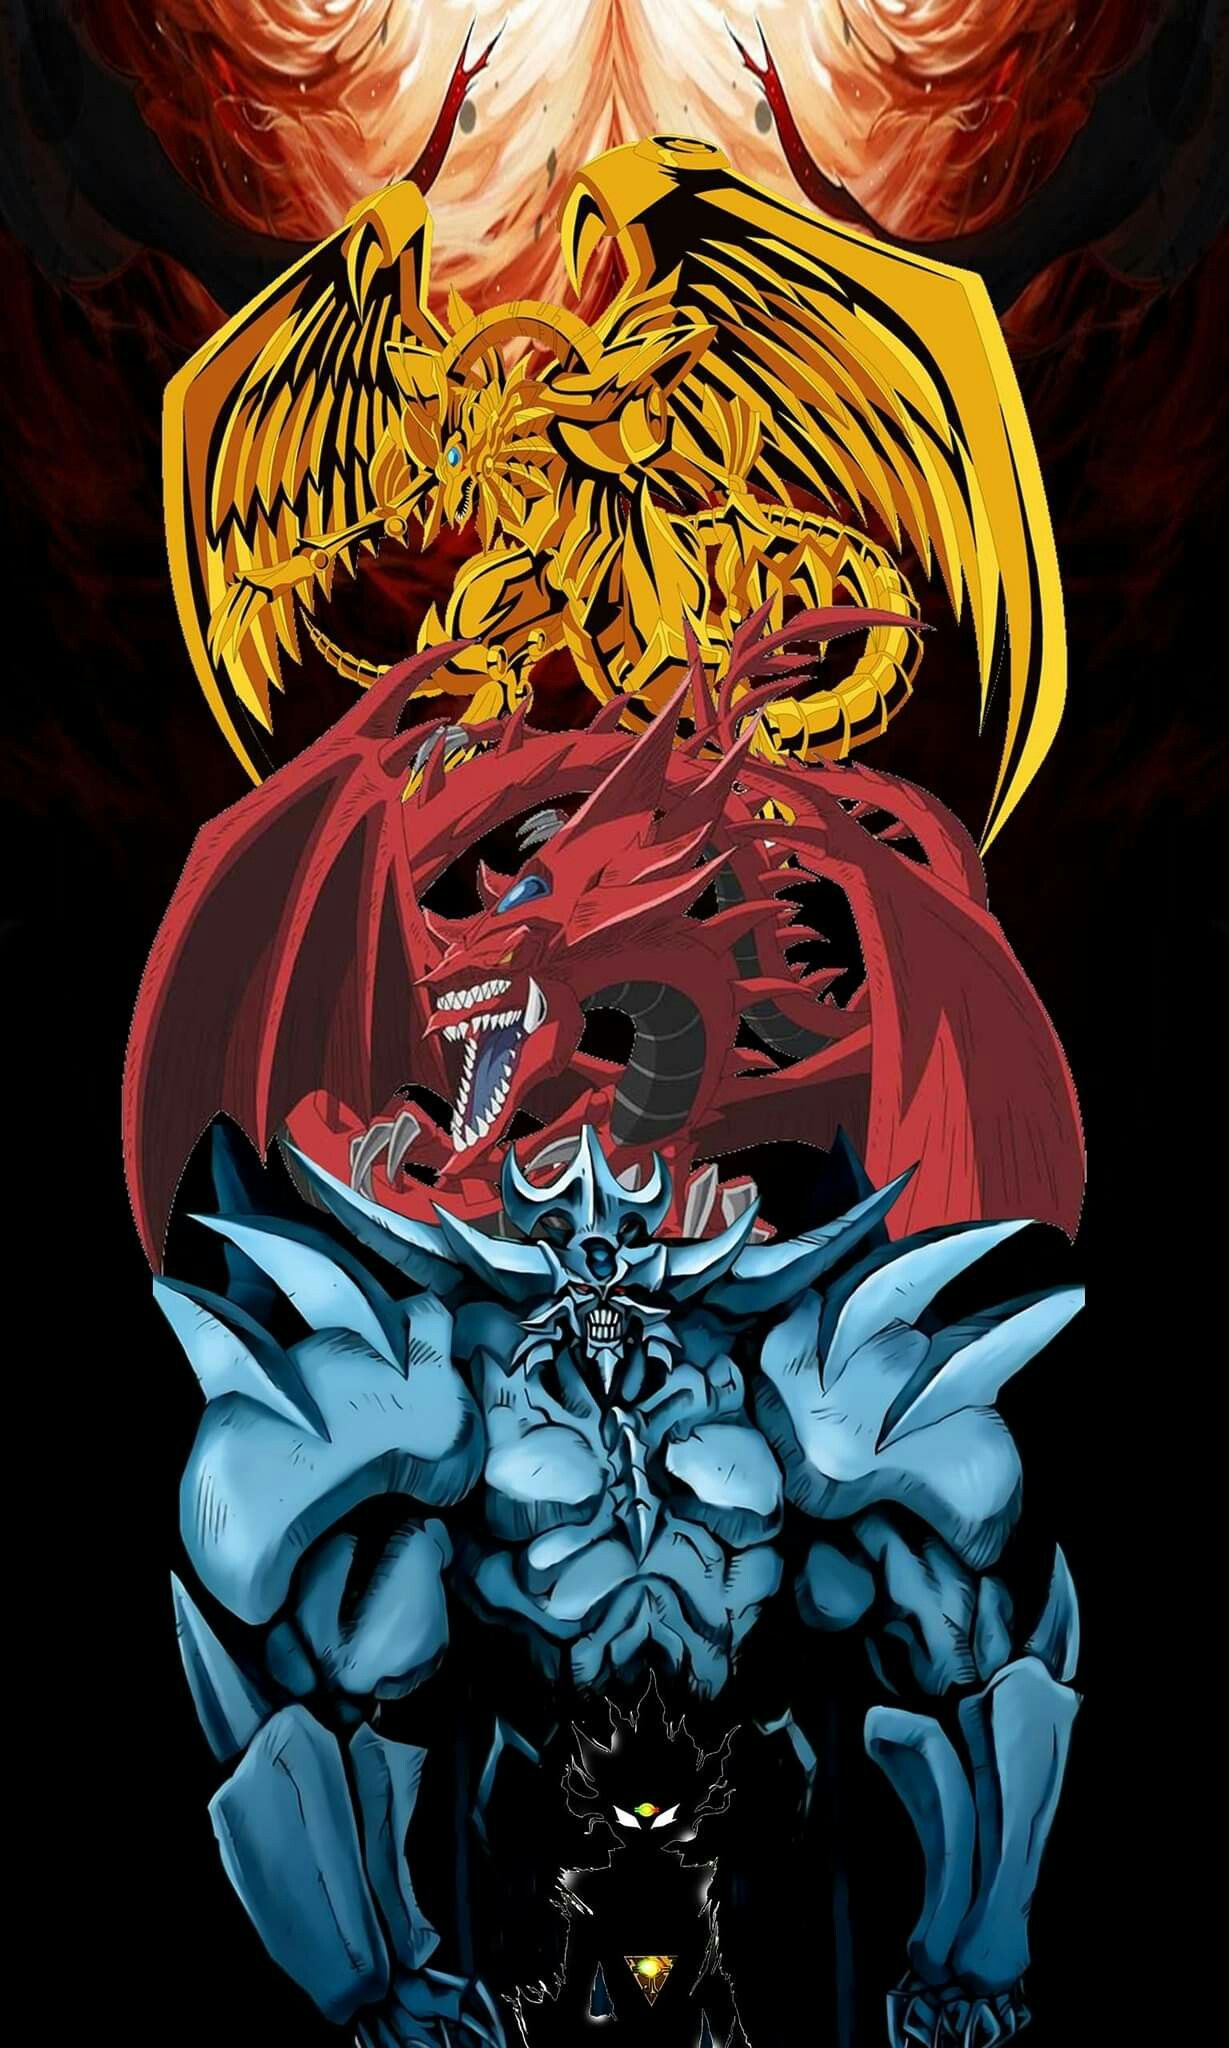 Obelisk slifer and ra yugioh dragons yugioh monsters pokemon vs digimon